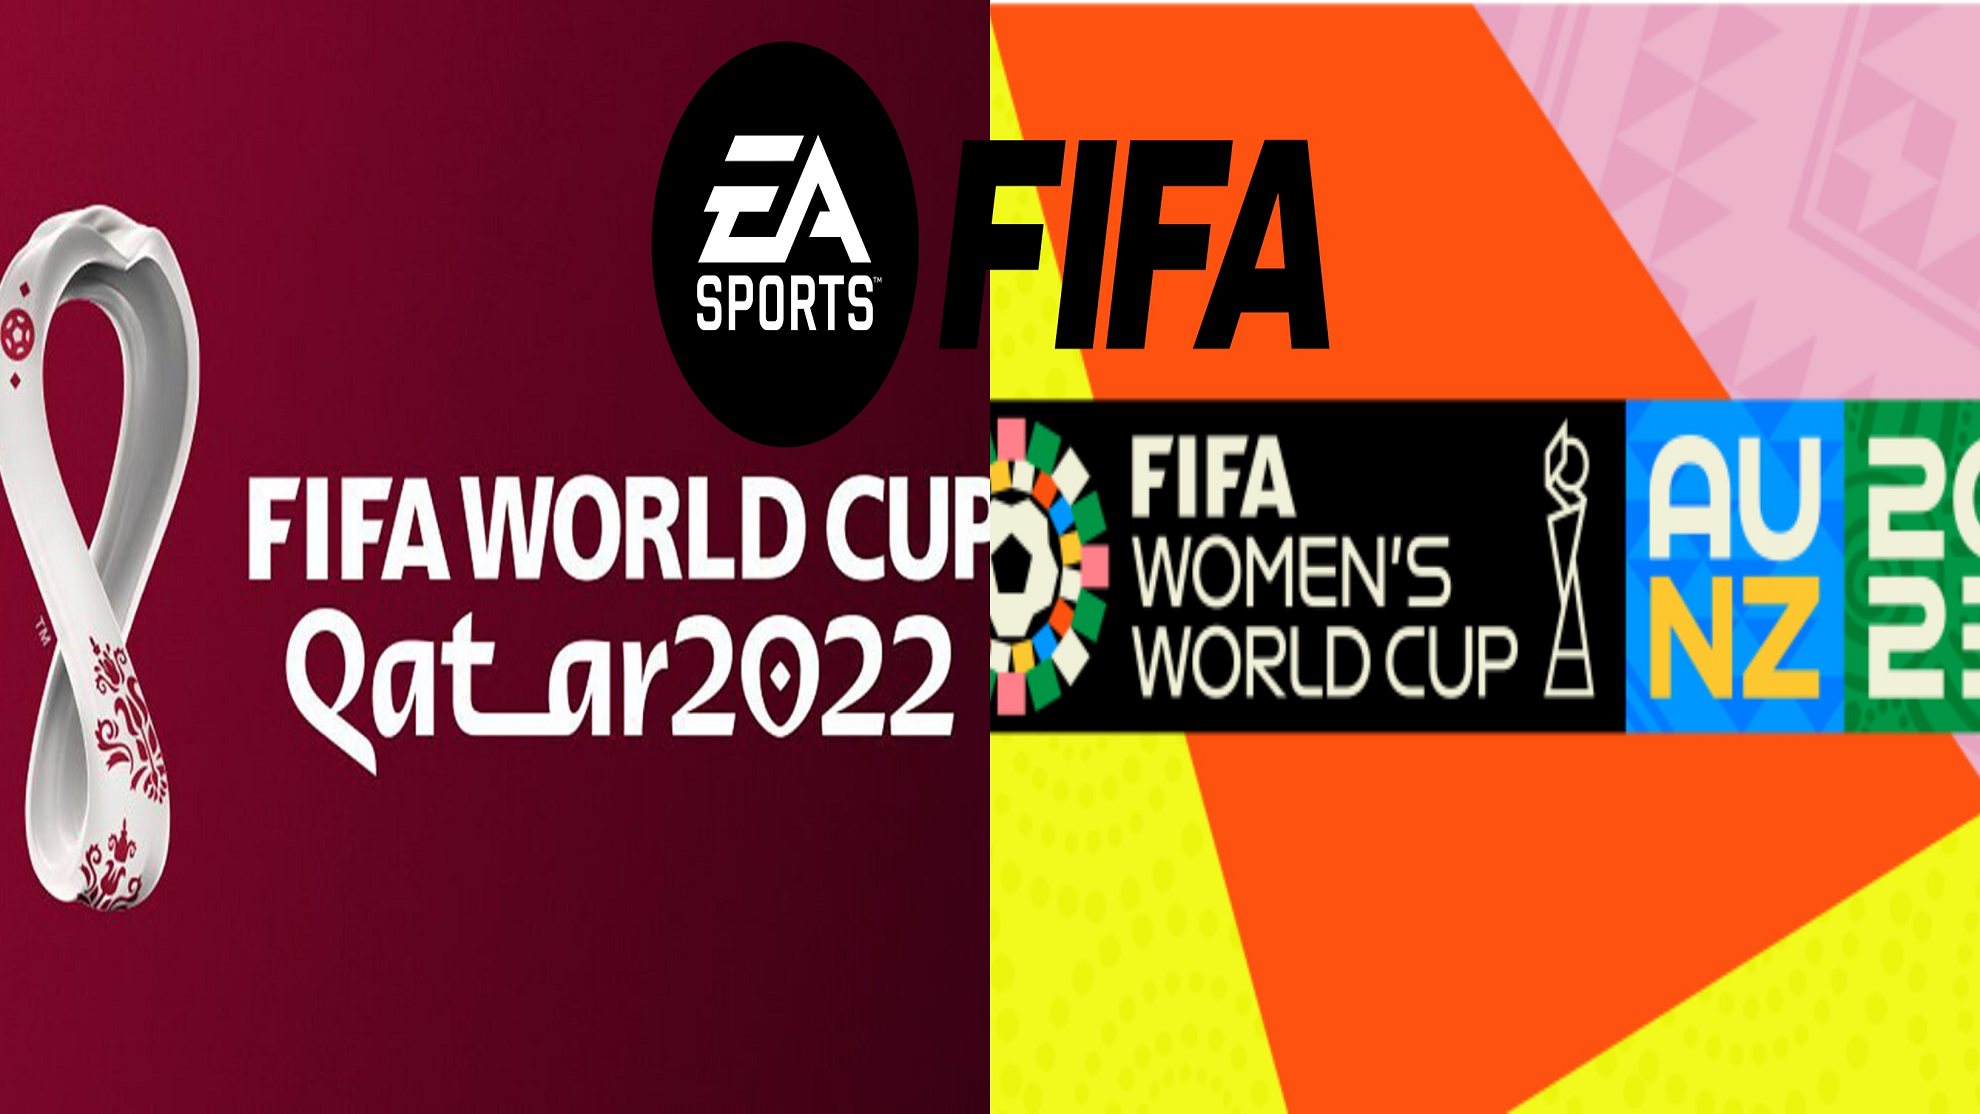 Los logos del Mundial de Qatar 2022 y Australia NZ 2023